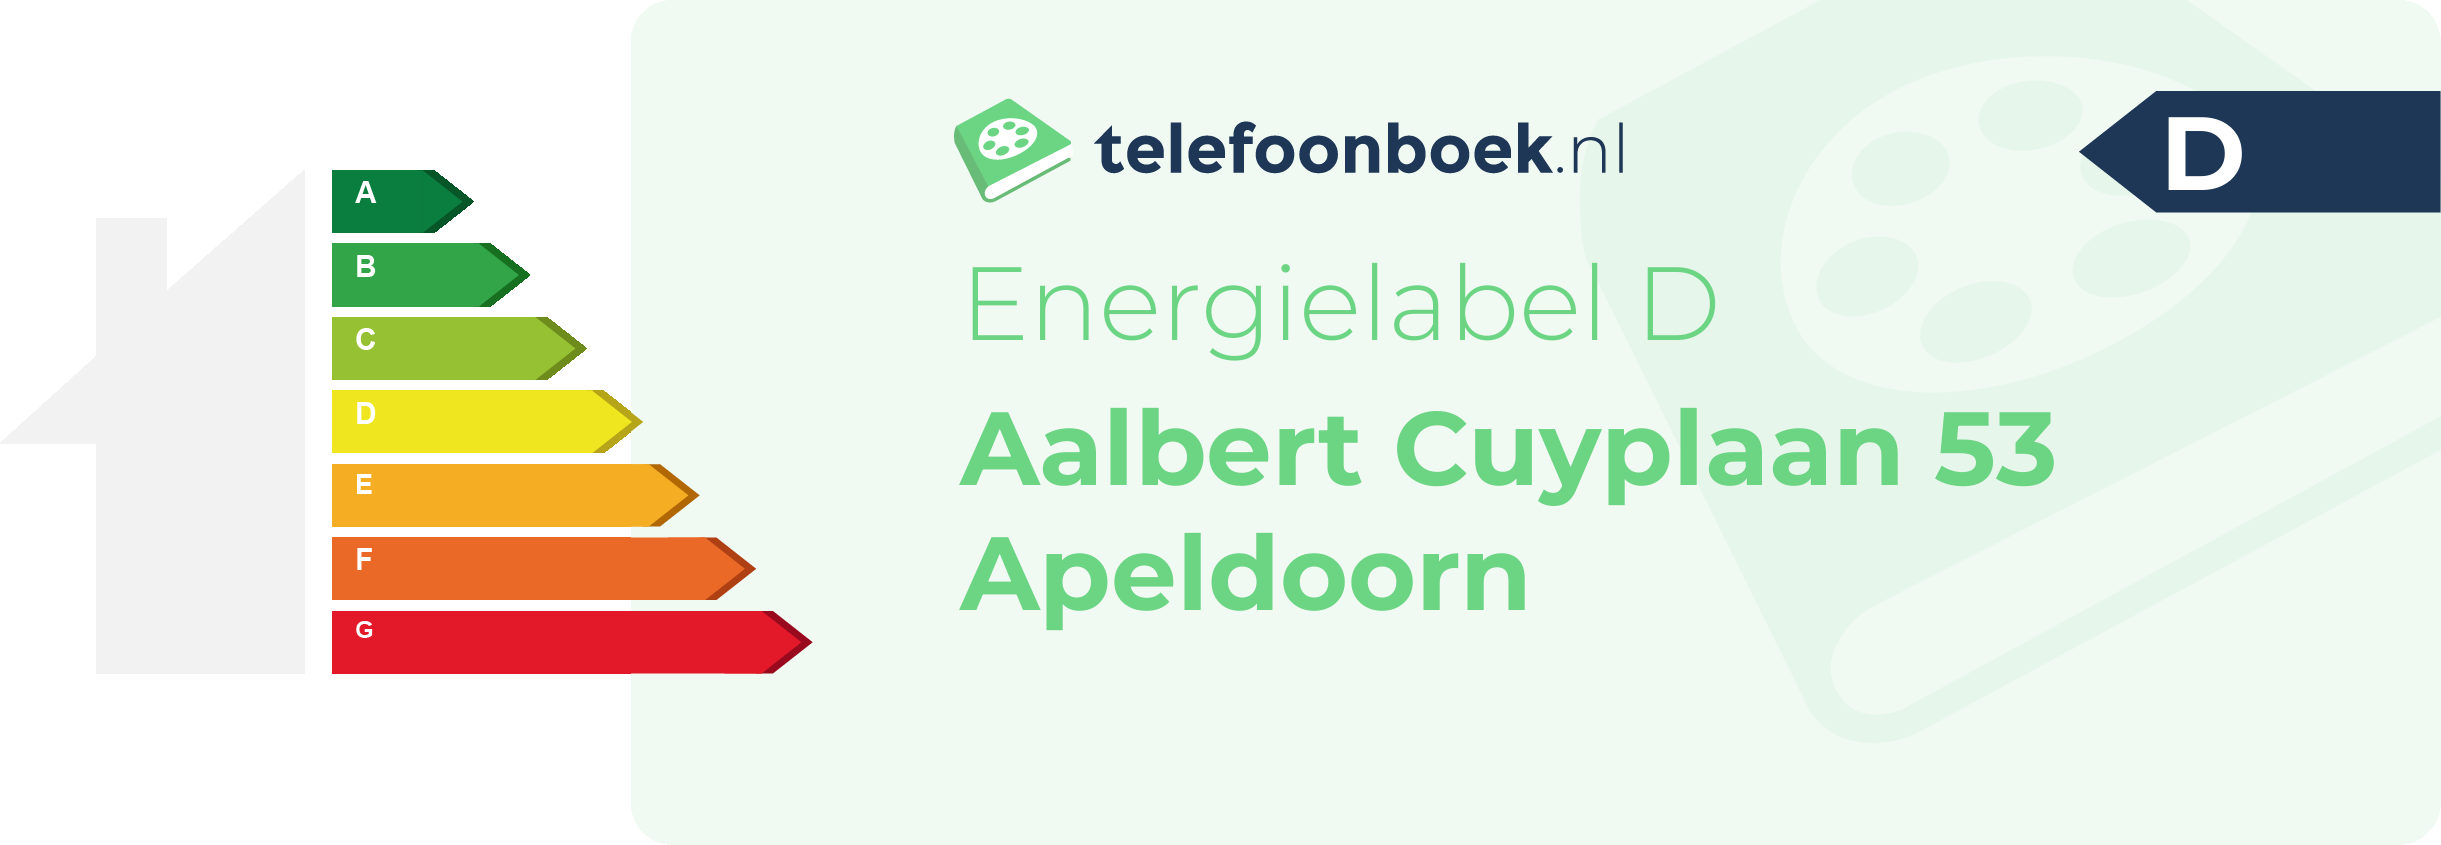 Energielabel Aalbert Cuyplaan 53 Apeldoorn